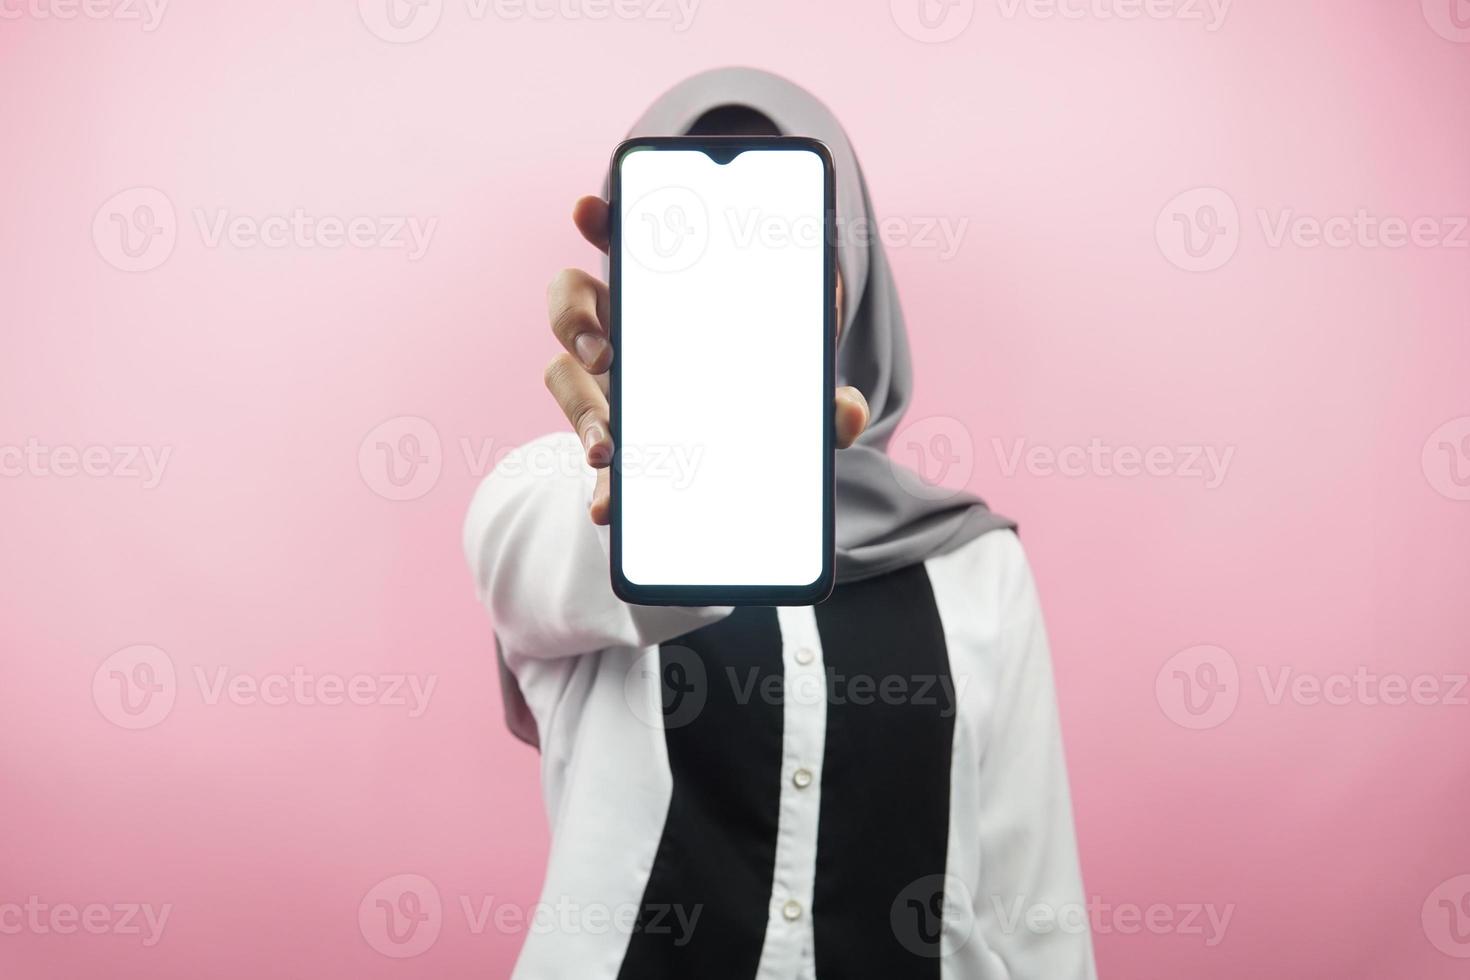 donna musulmana con le mani che tengono lo smartphone, presentando app, presentando qualcosa, isolato su sfondo rosa, concetto pubblicitario foto